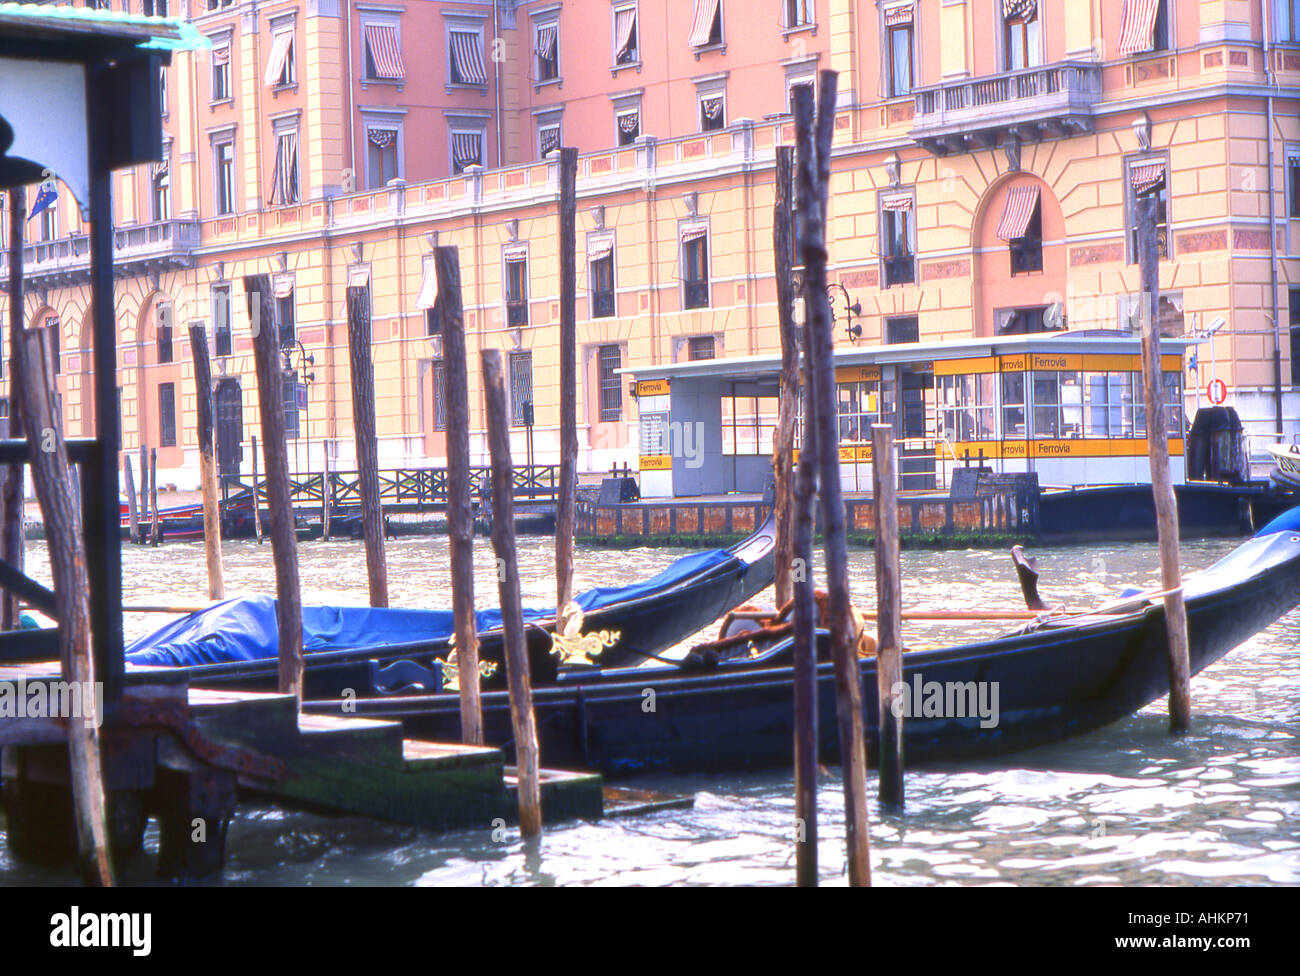 Vue de l'arrêt de vaporetto Ferrovia avec gondoles à Venise Italie amarré Banque D'Images